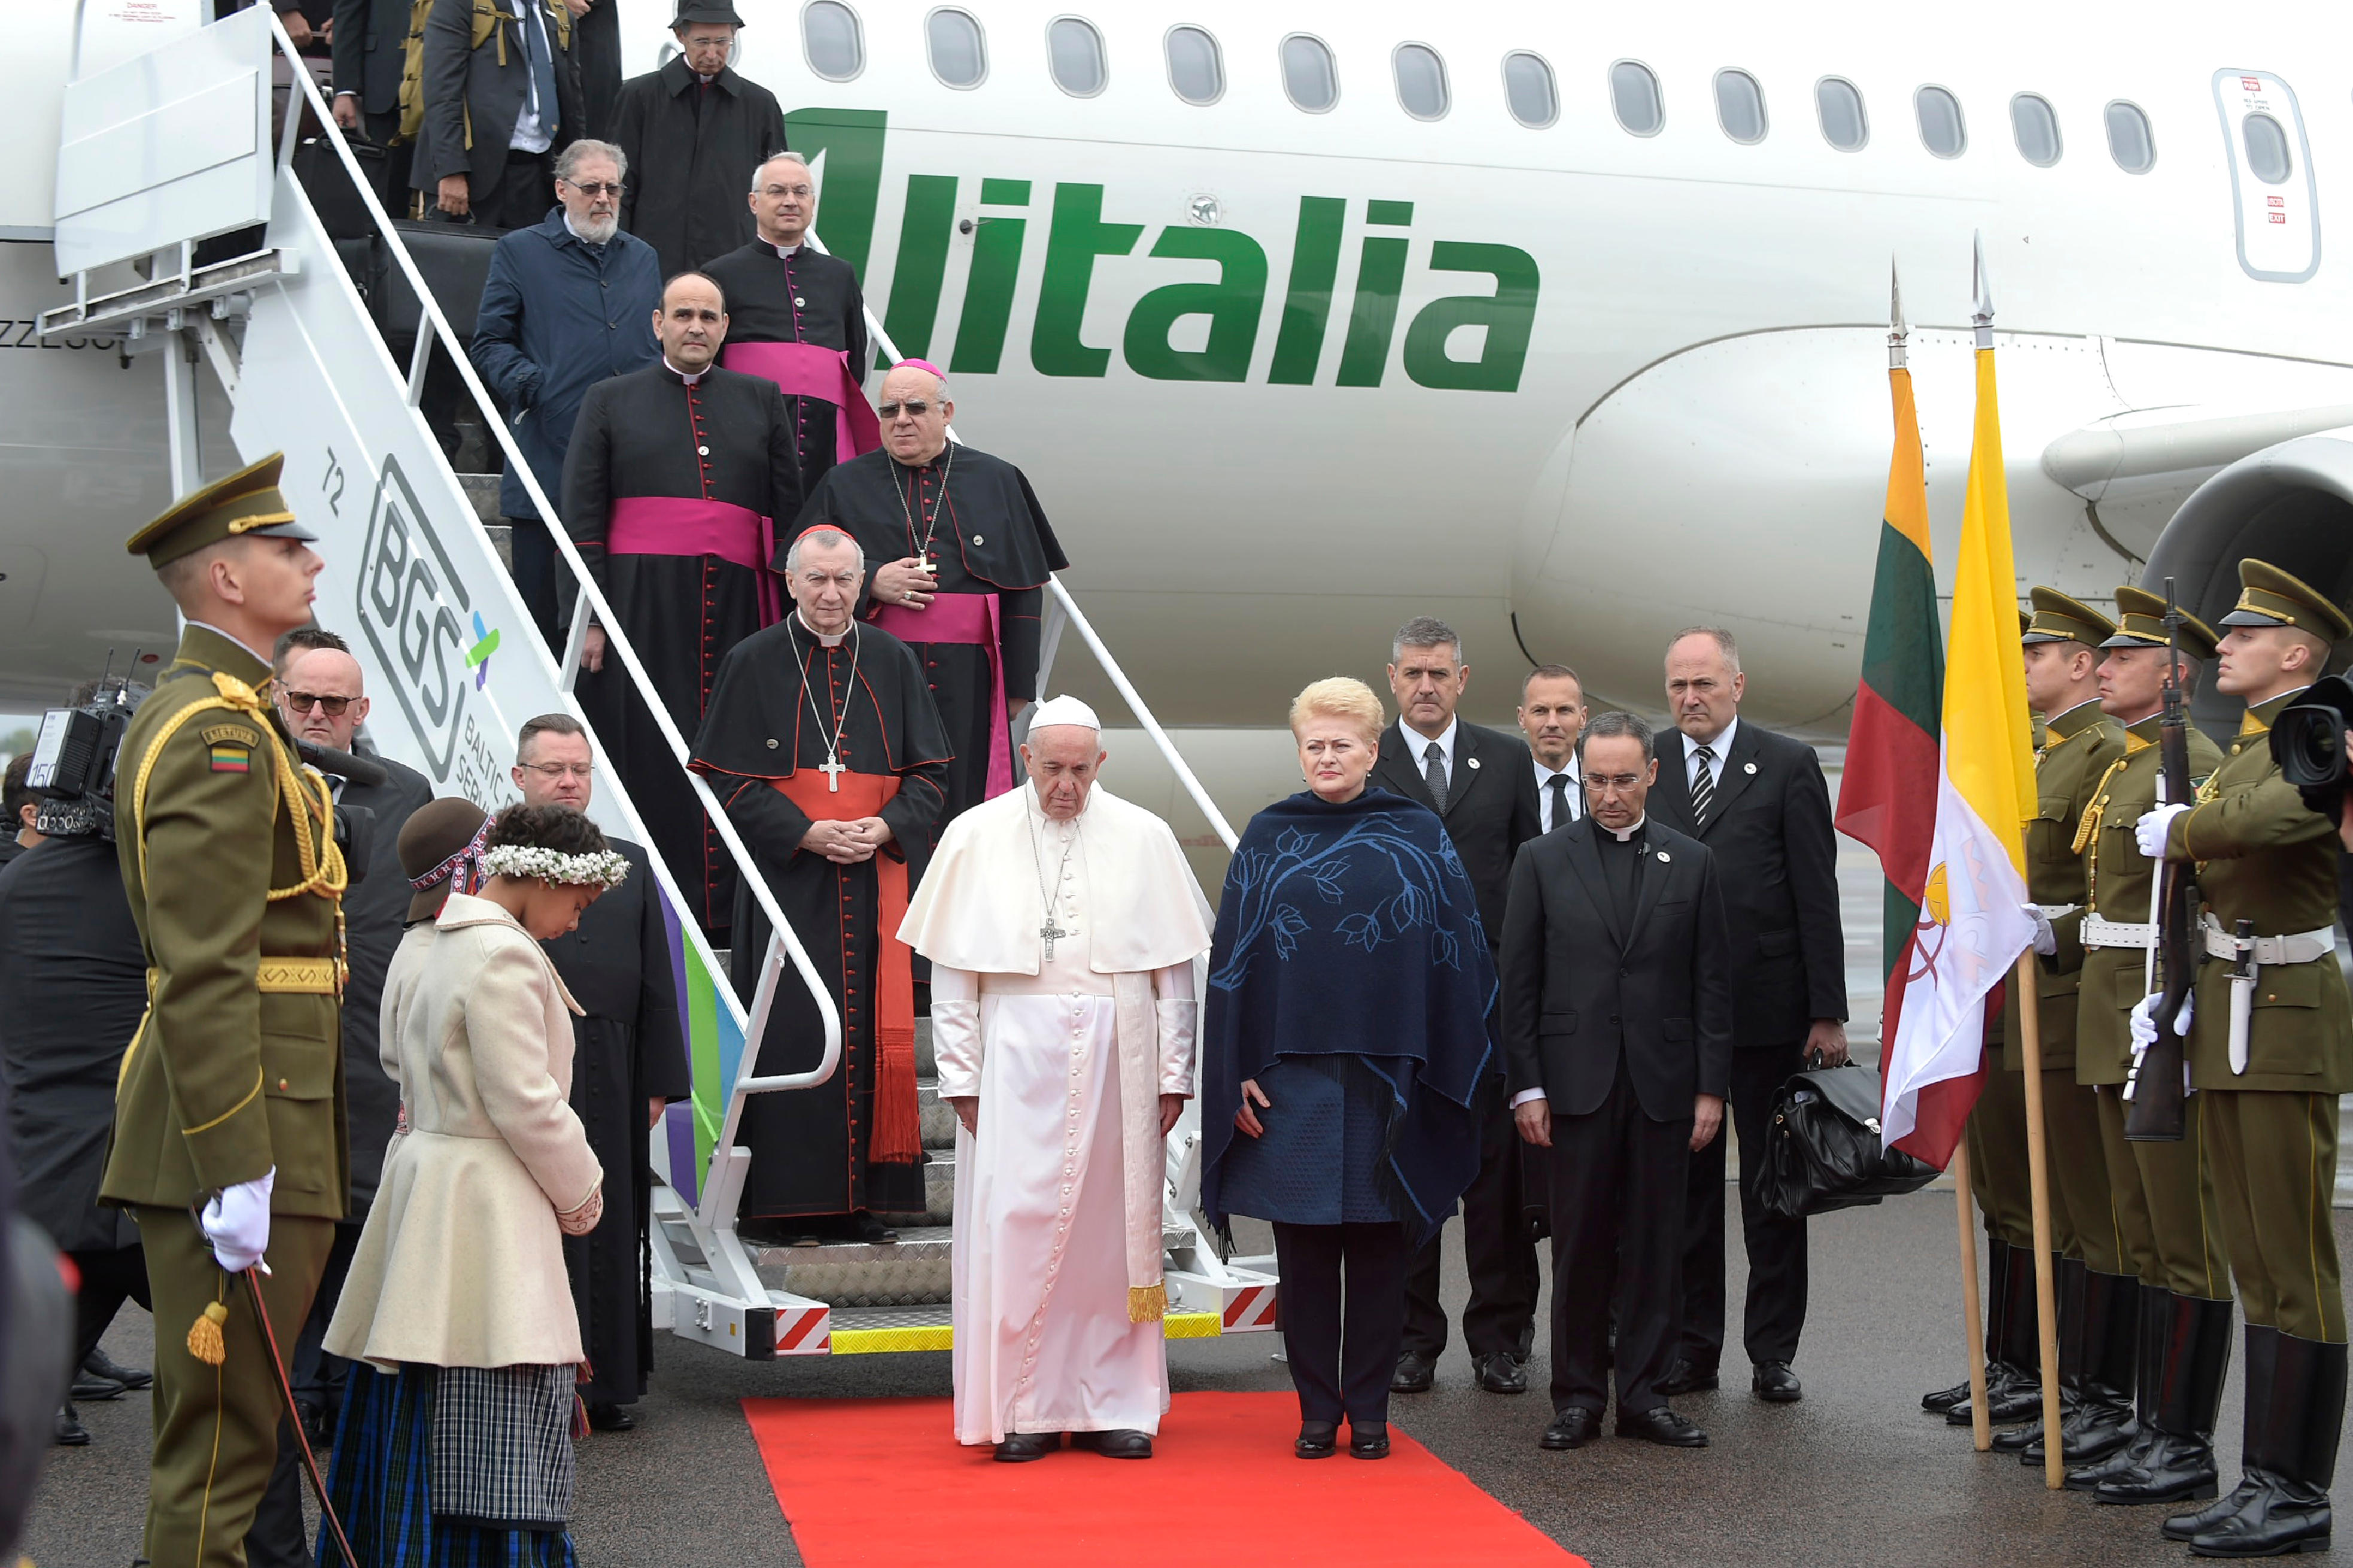 Arrivée à Vilnius, Lituanie © Vatican Media